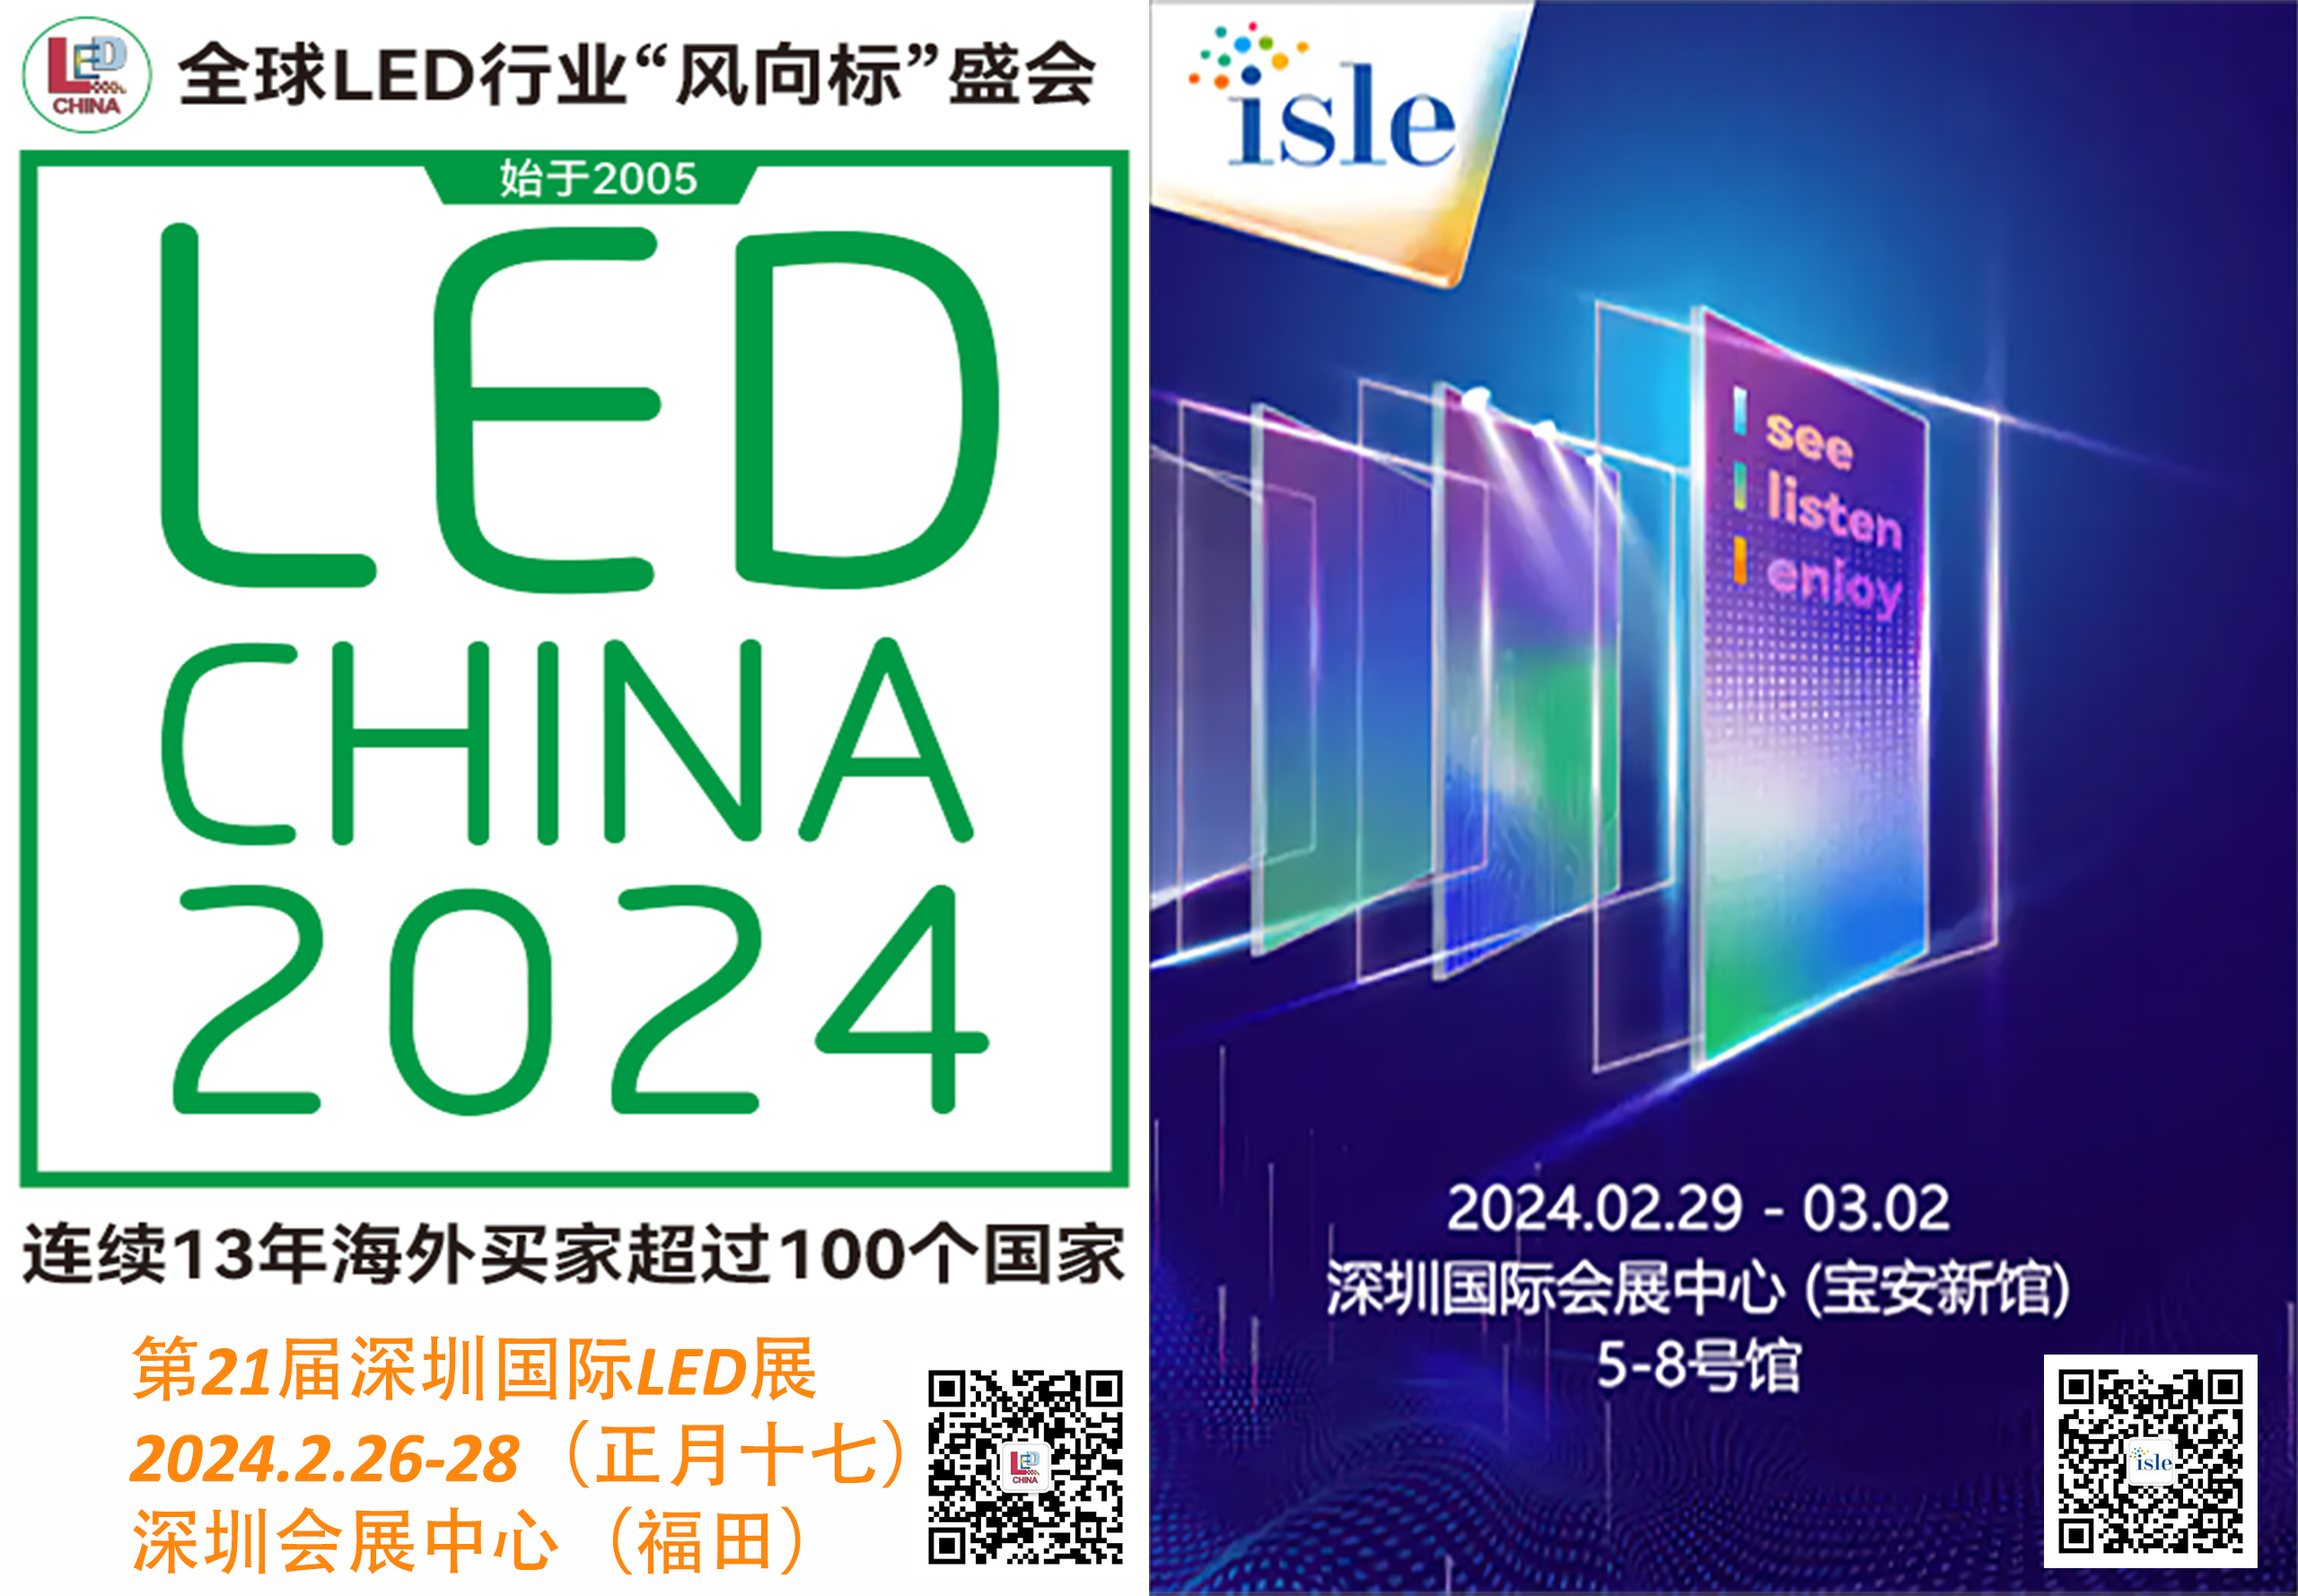 LED, ISLE présente les dernières technologies LED et Smart Display